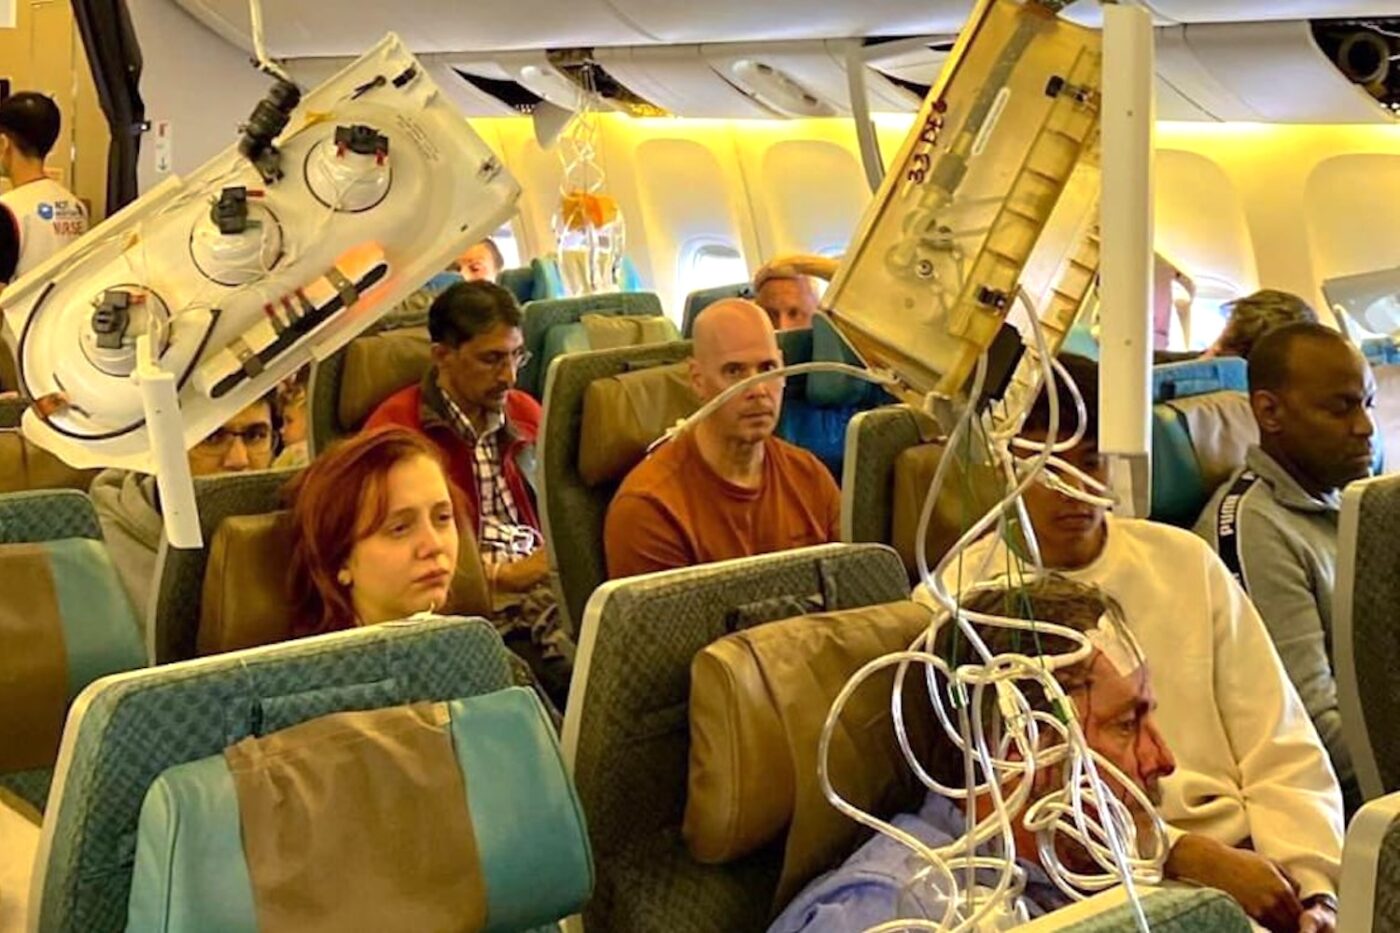 Пассажиры самолета Singapore Airlines рассказали о сценах «абсолютного ужаса»